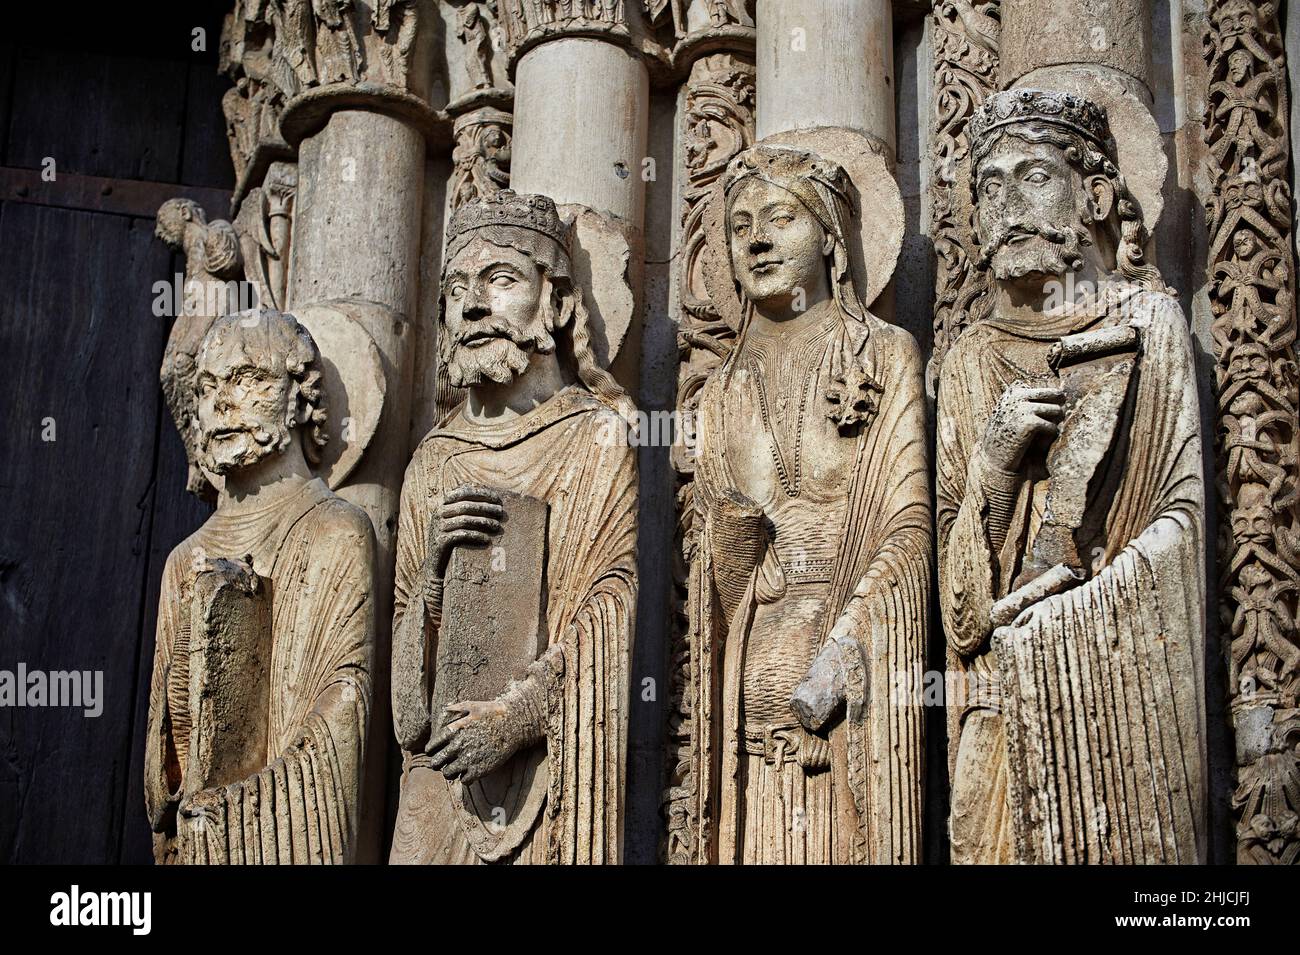 La Catedral de Chartres estatuas góticas y esculturas exteriores del portal del oeste. La fachada oeste fue una de las pocas partes de la catedral que sobrevivieron Foto de stock